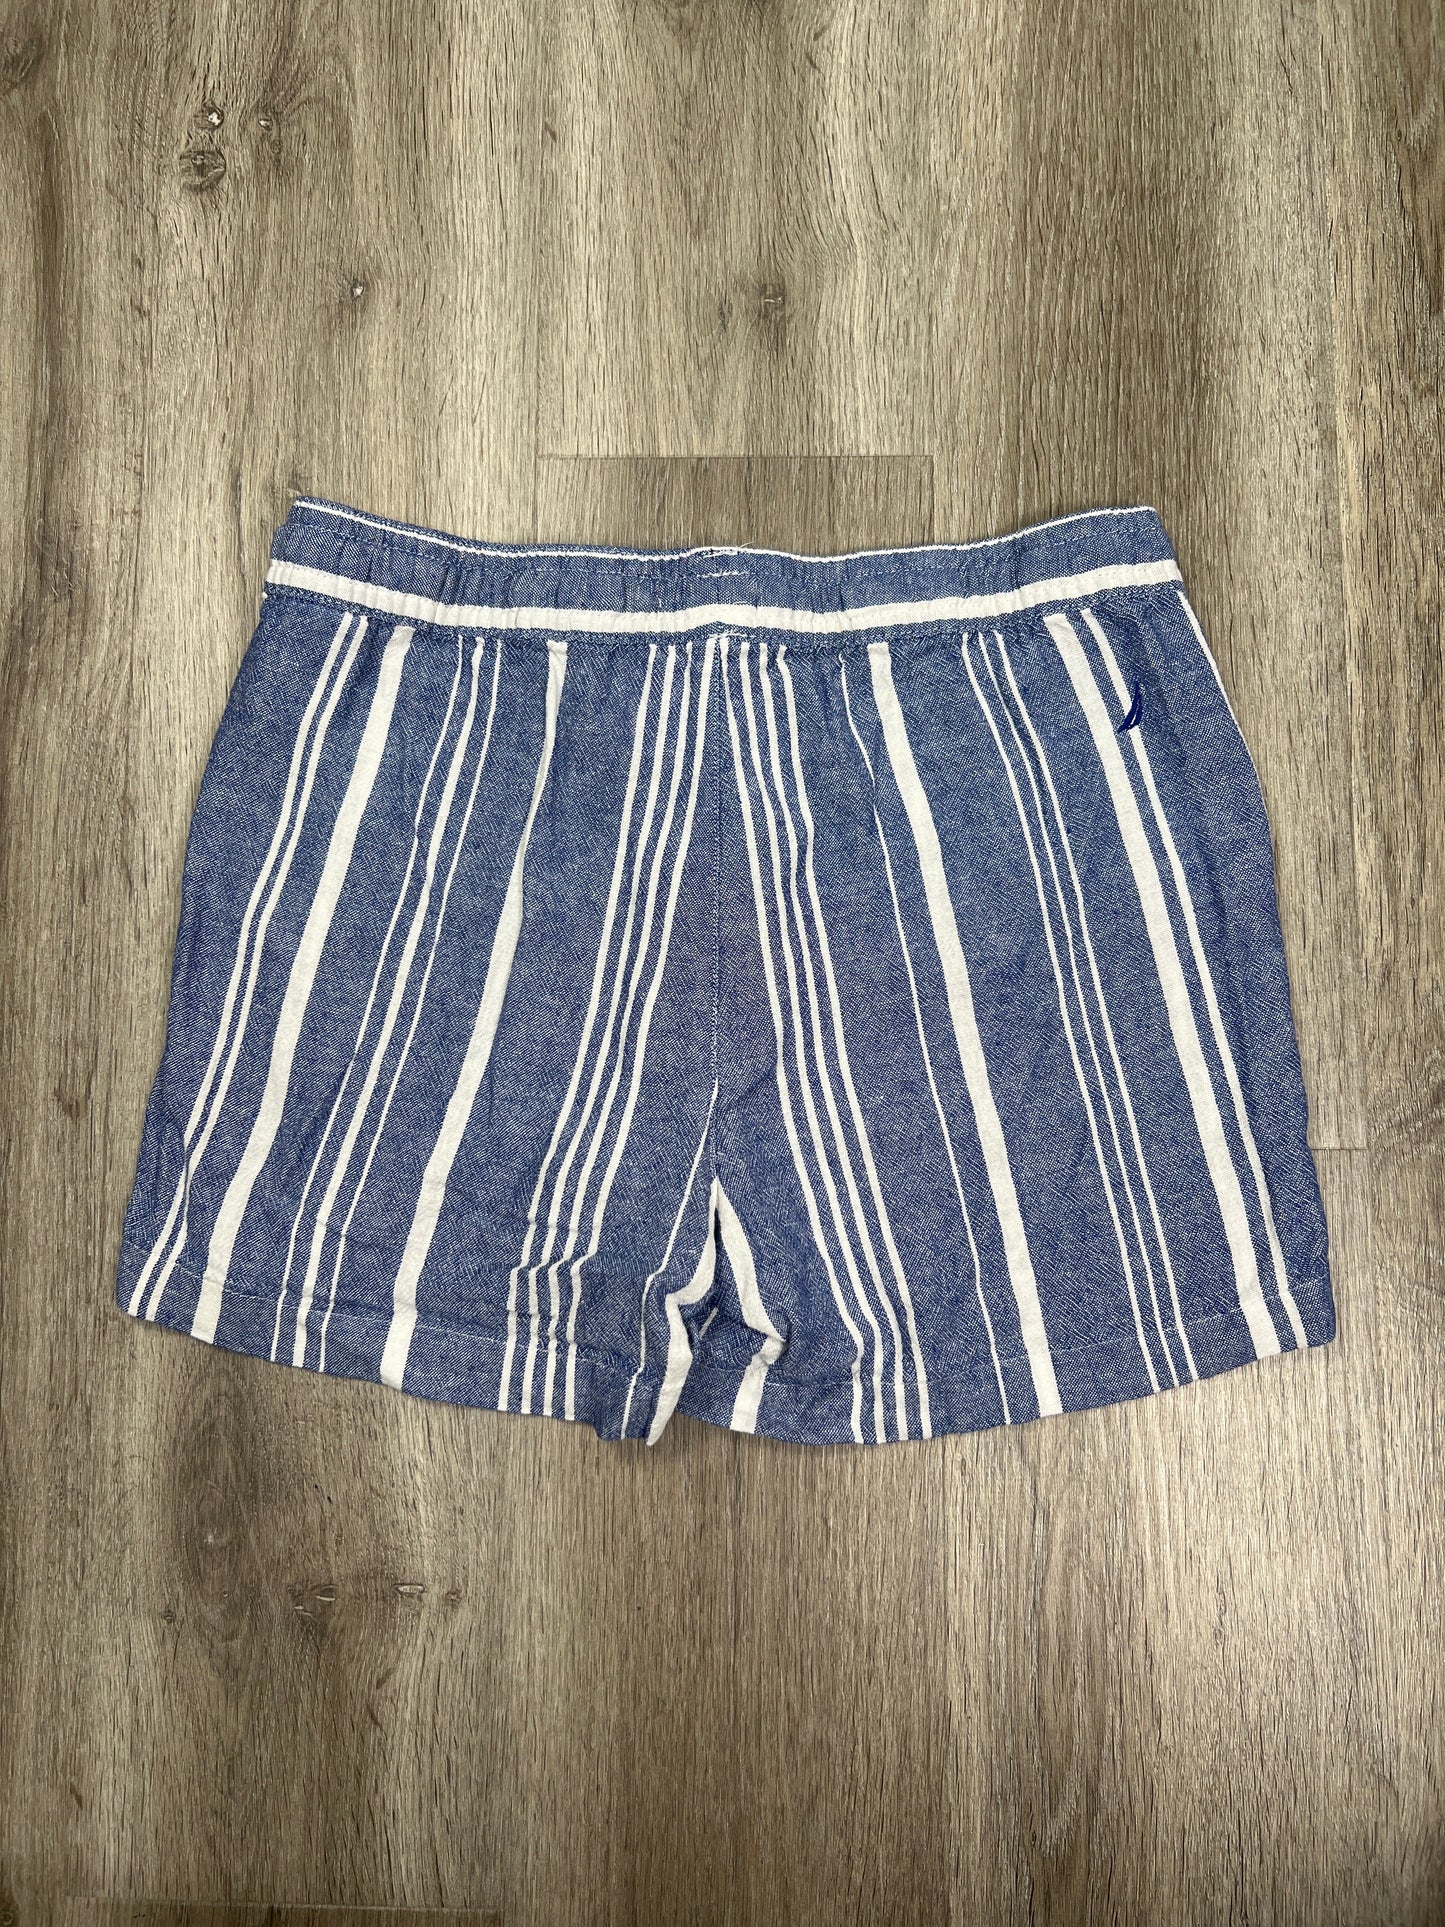 Striped Pattern Shorts Nautica, Size S